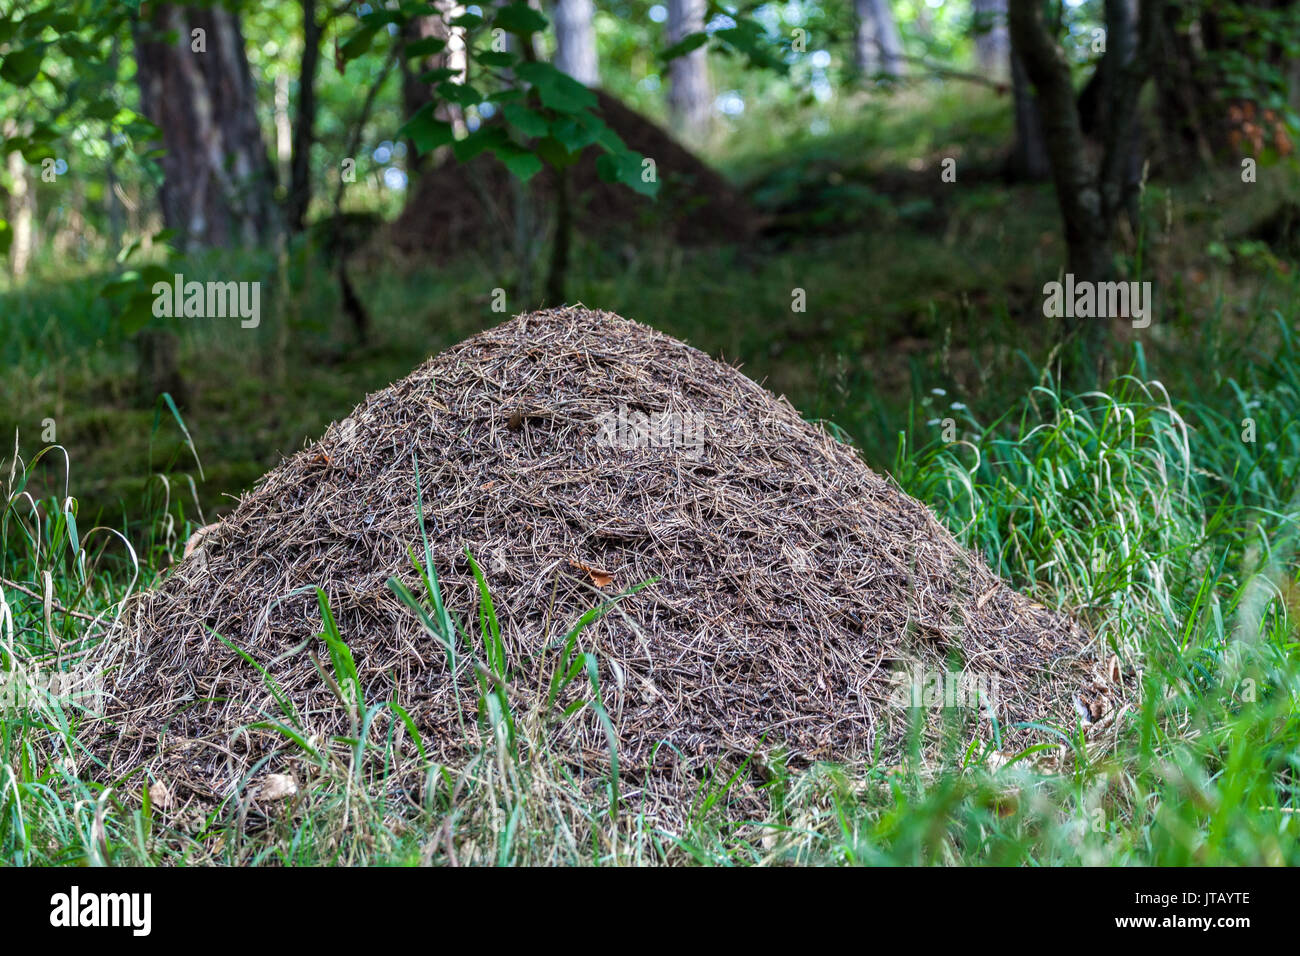 Ameisennest aus Holz, Formica rufa, Anthill Forest, Ant Hill, Ameisennest, Tschechische Republik Wald Wildtiere Tierbau Nest, Wald Ameisen Formica Nisting Stockfoto